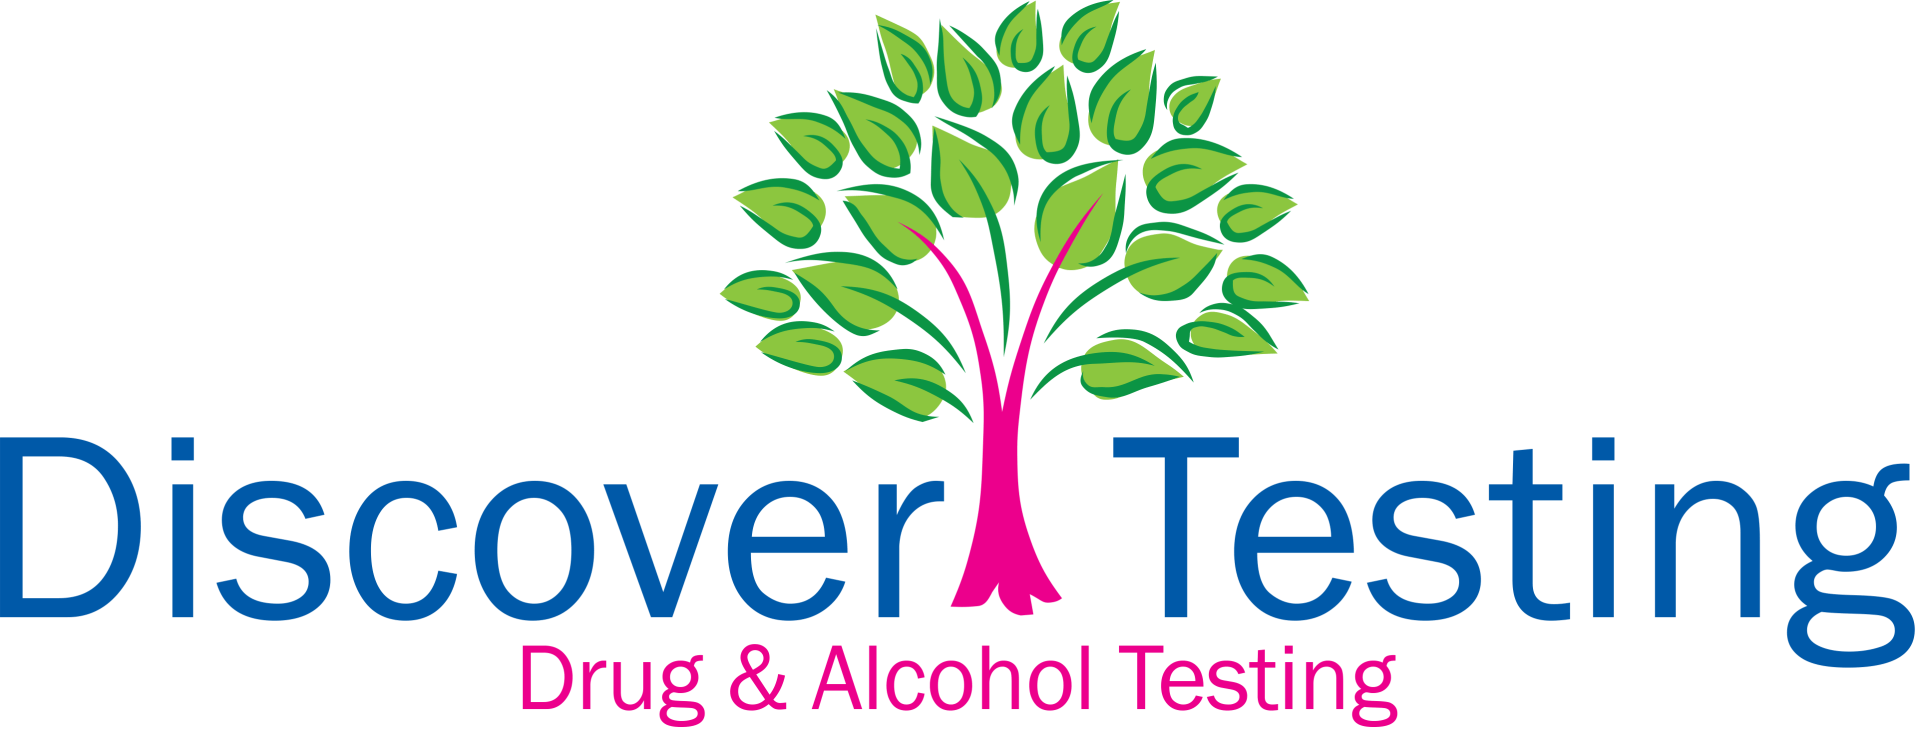 Discover Testing Drug & Alcohol Testing Logo